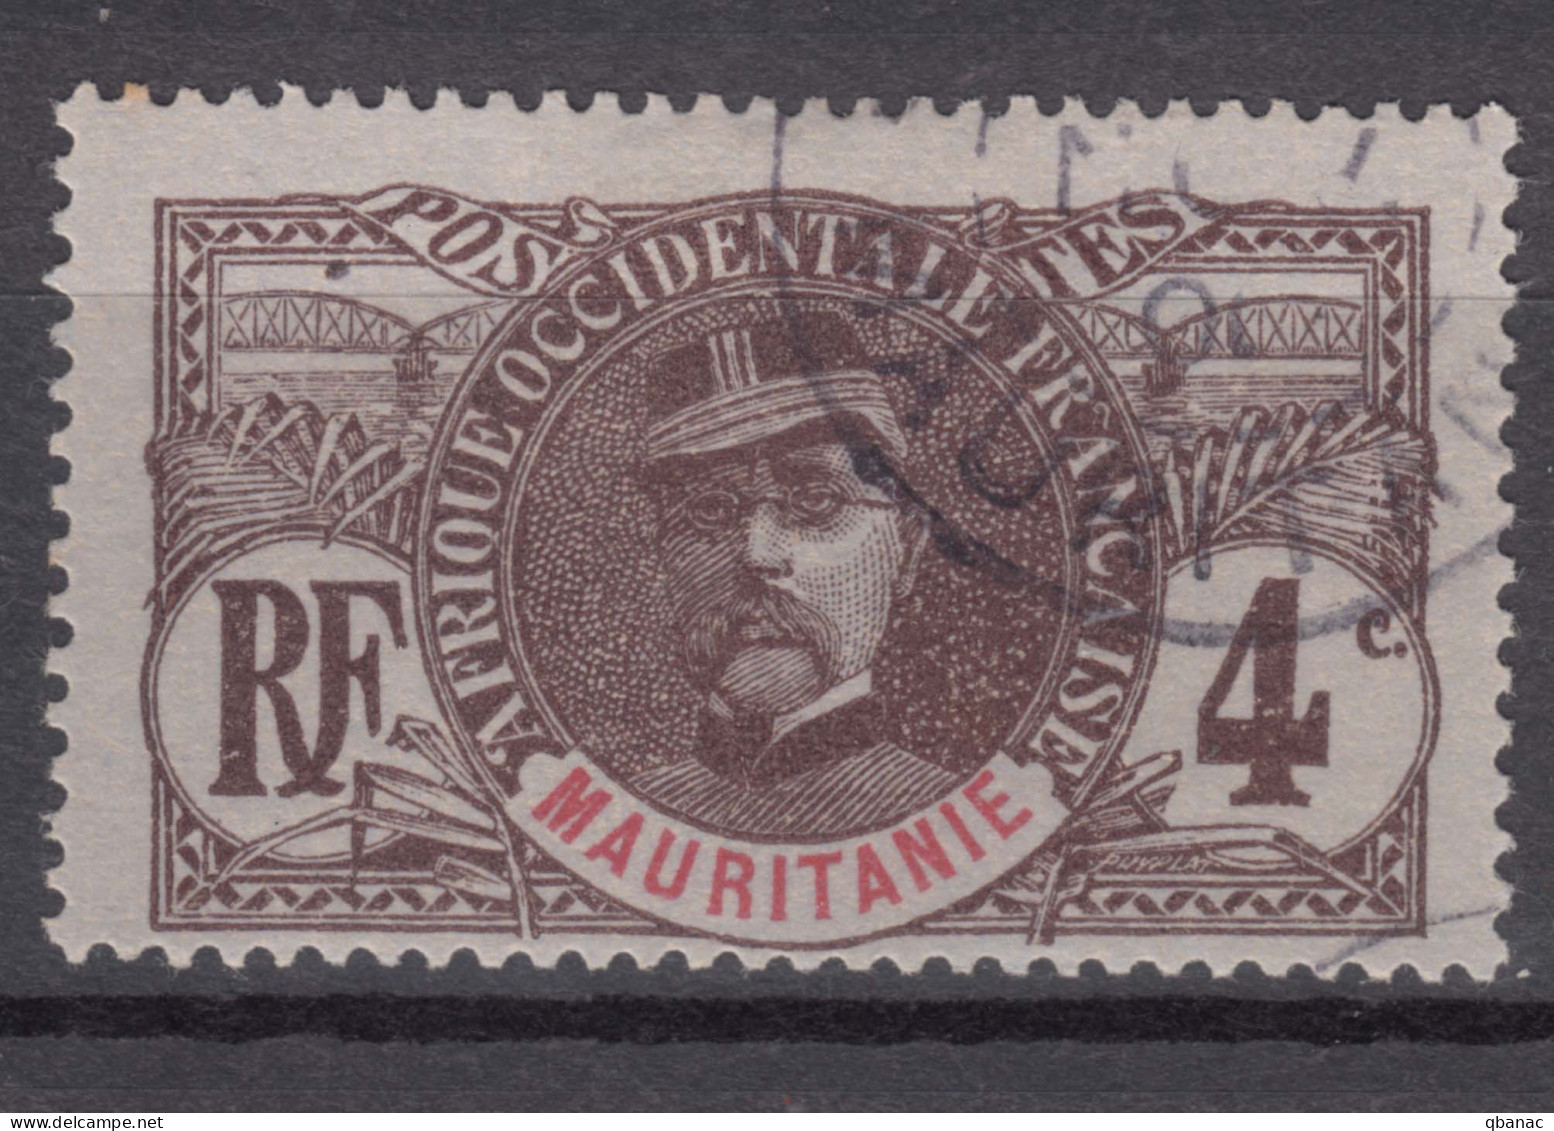 Mauritania Mauritanie 1906 Yvert#3 Used - Gebraucht